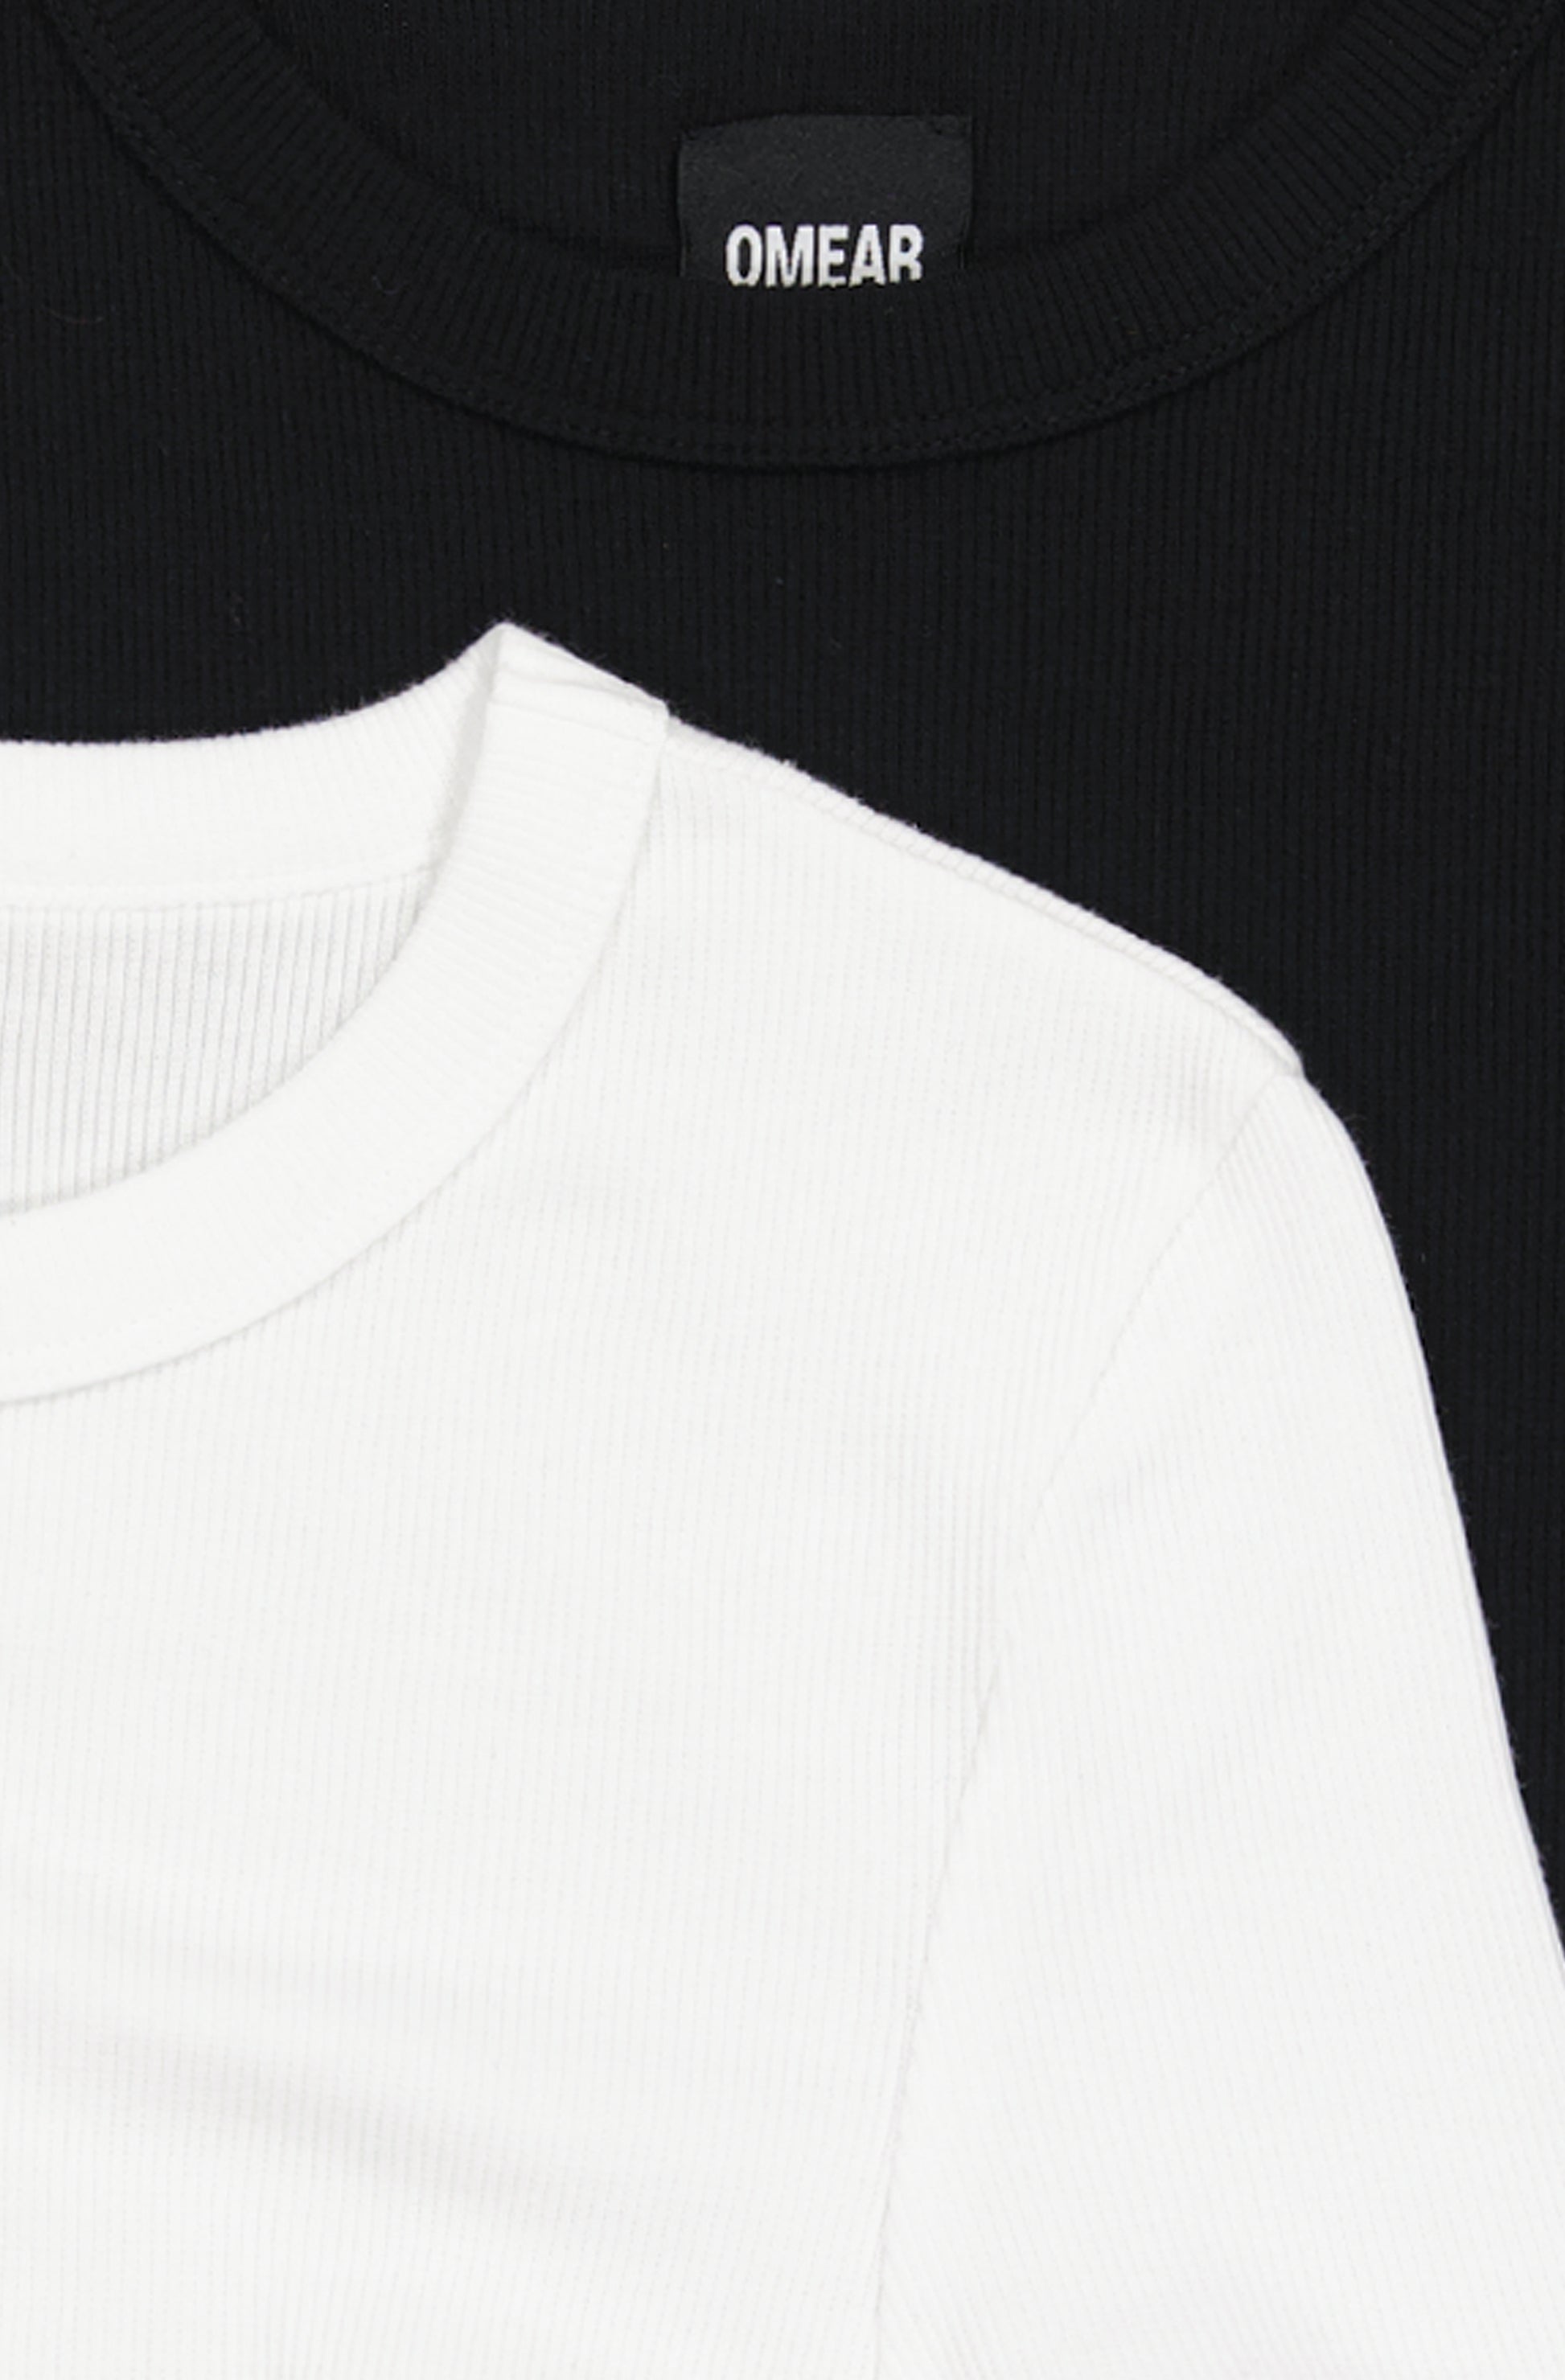 Le lot de 2 t-shirts manches courtes femme en coton côtelé OMEAR, en noir et en blanc, vue détaillée de l'encolure doublée